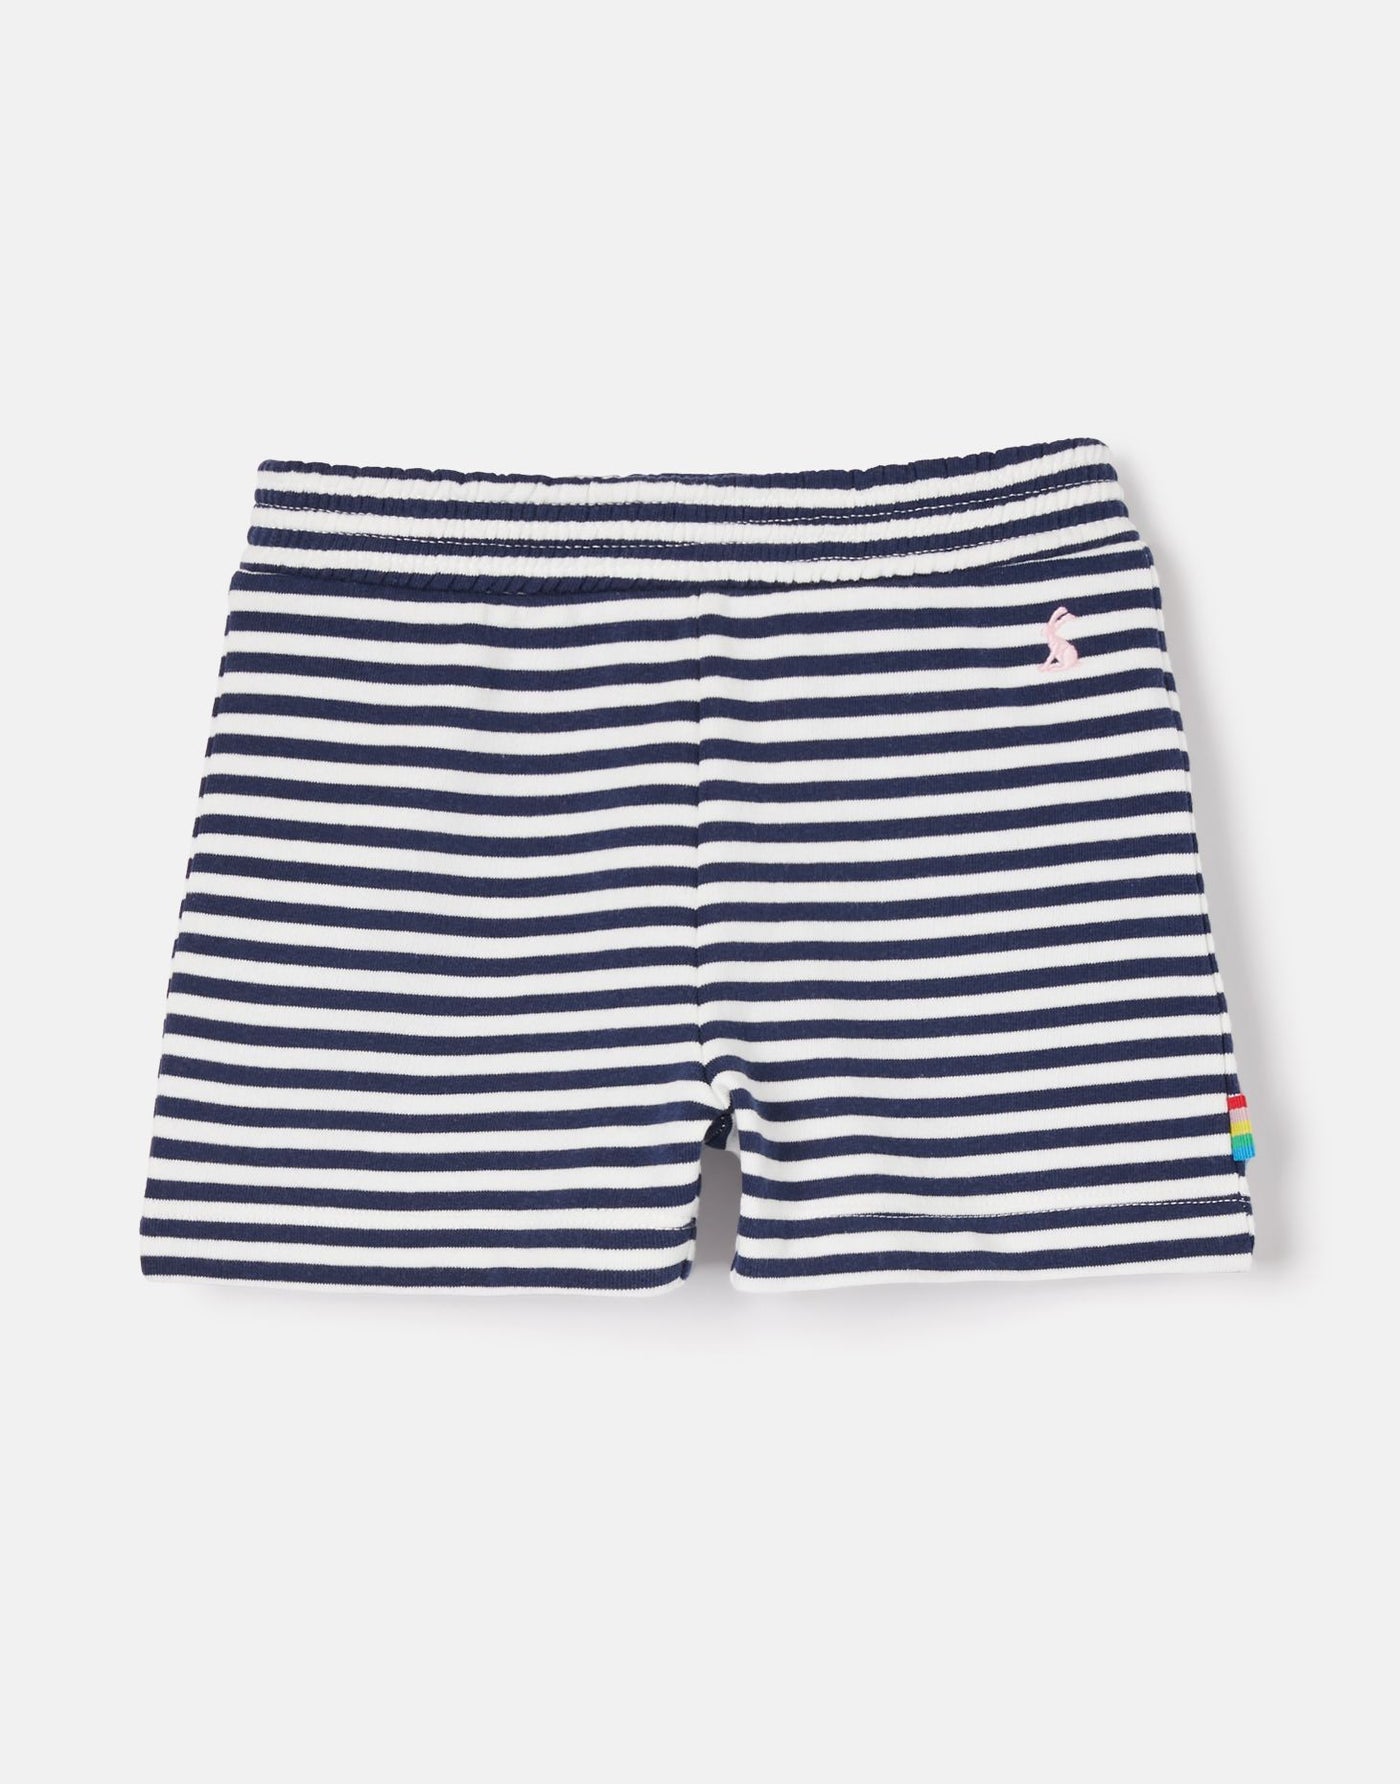 Kittiwake Striped Shorts